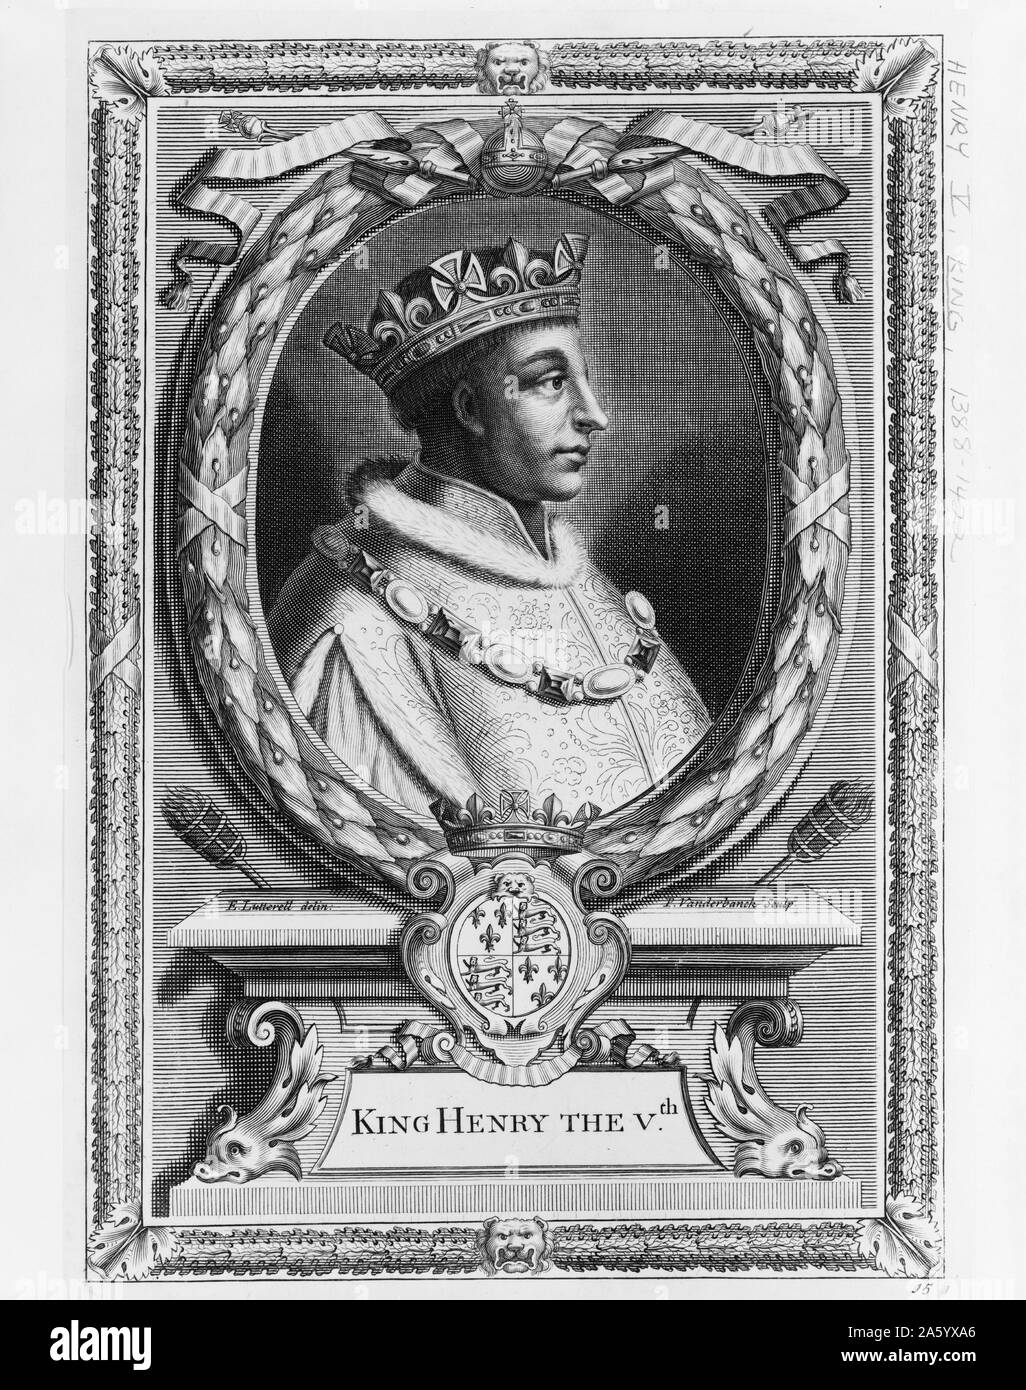 Illustration du roi Henry V (1387-1422) Roi d'Angleterre et deuxième souverain à la Maison de Lancastre. Datée 1800 Banque D'Images